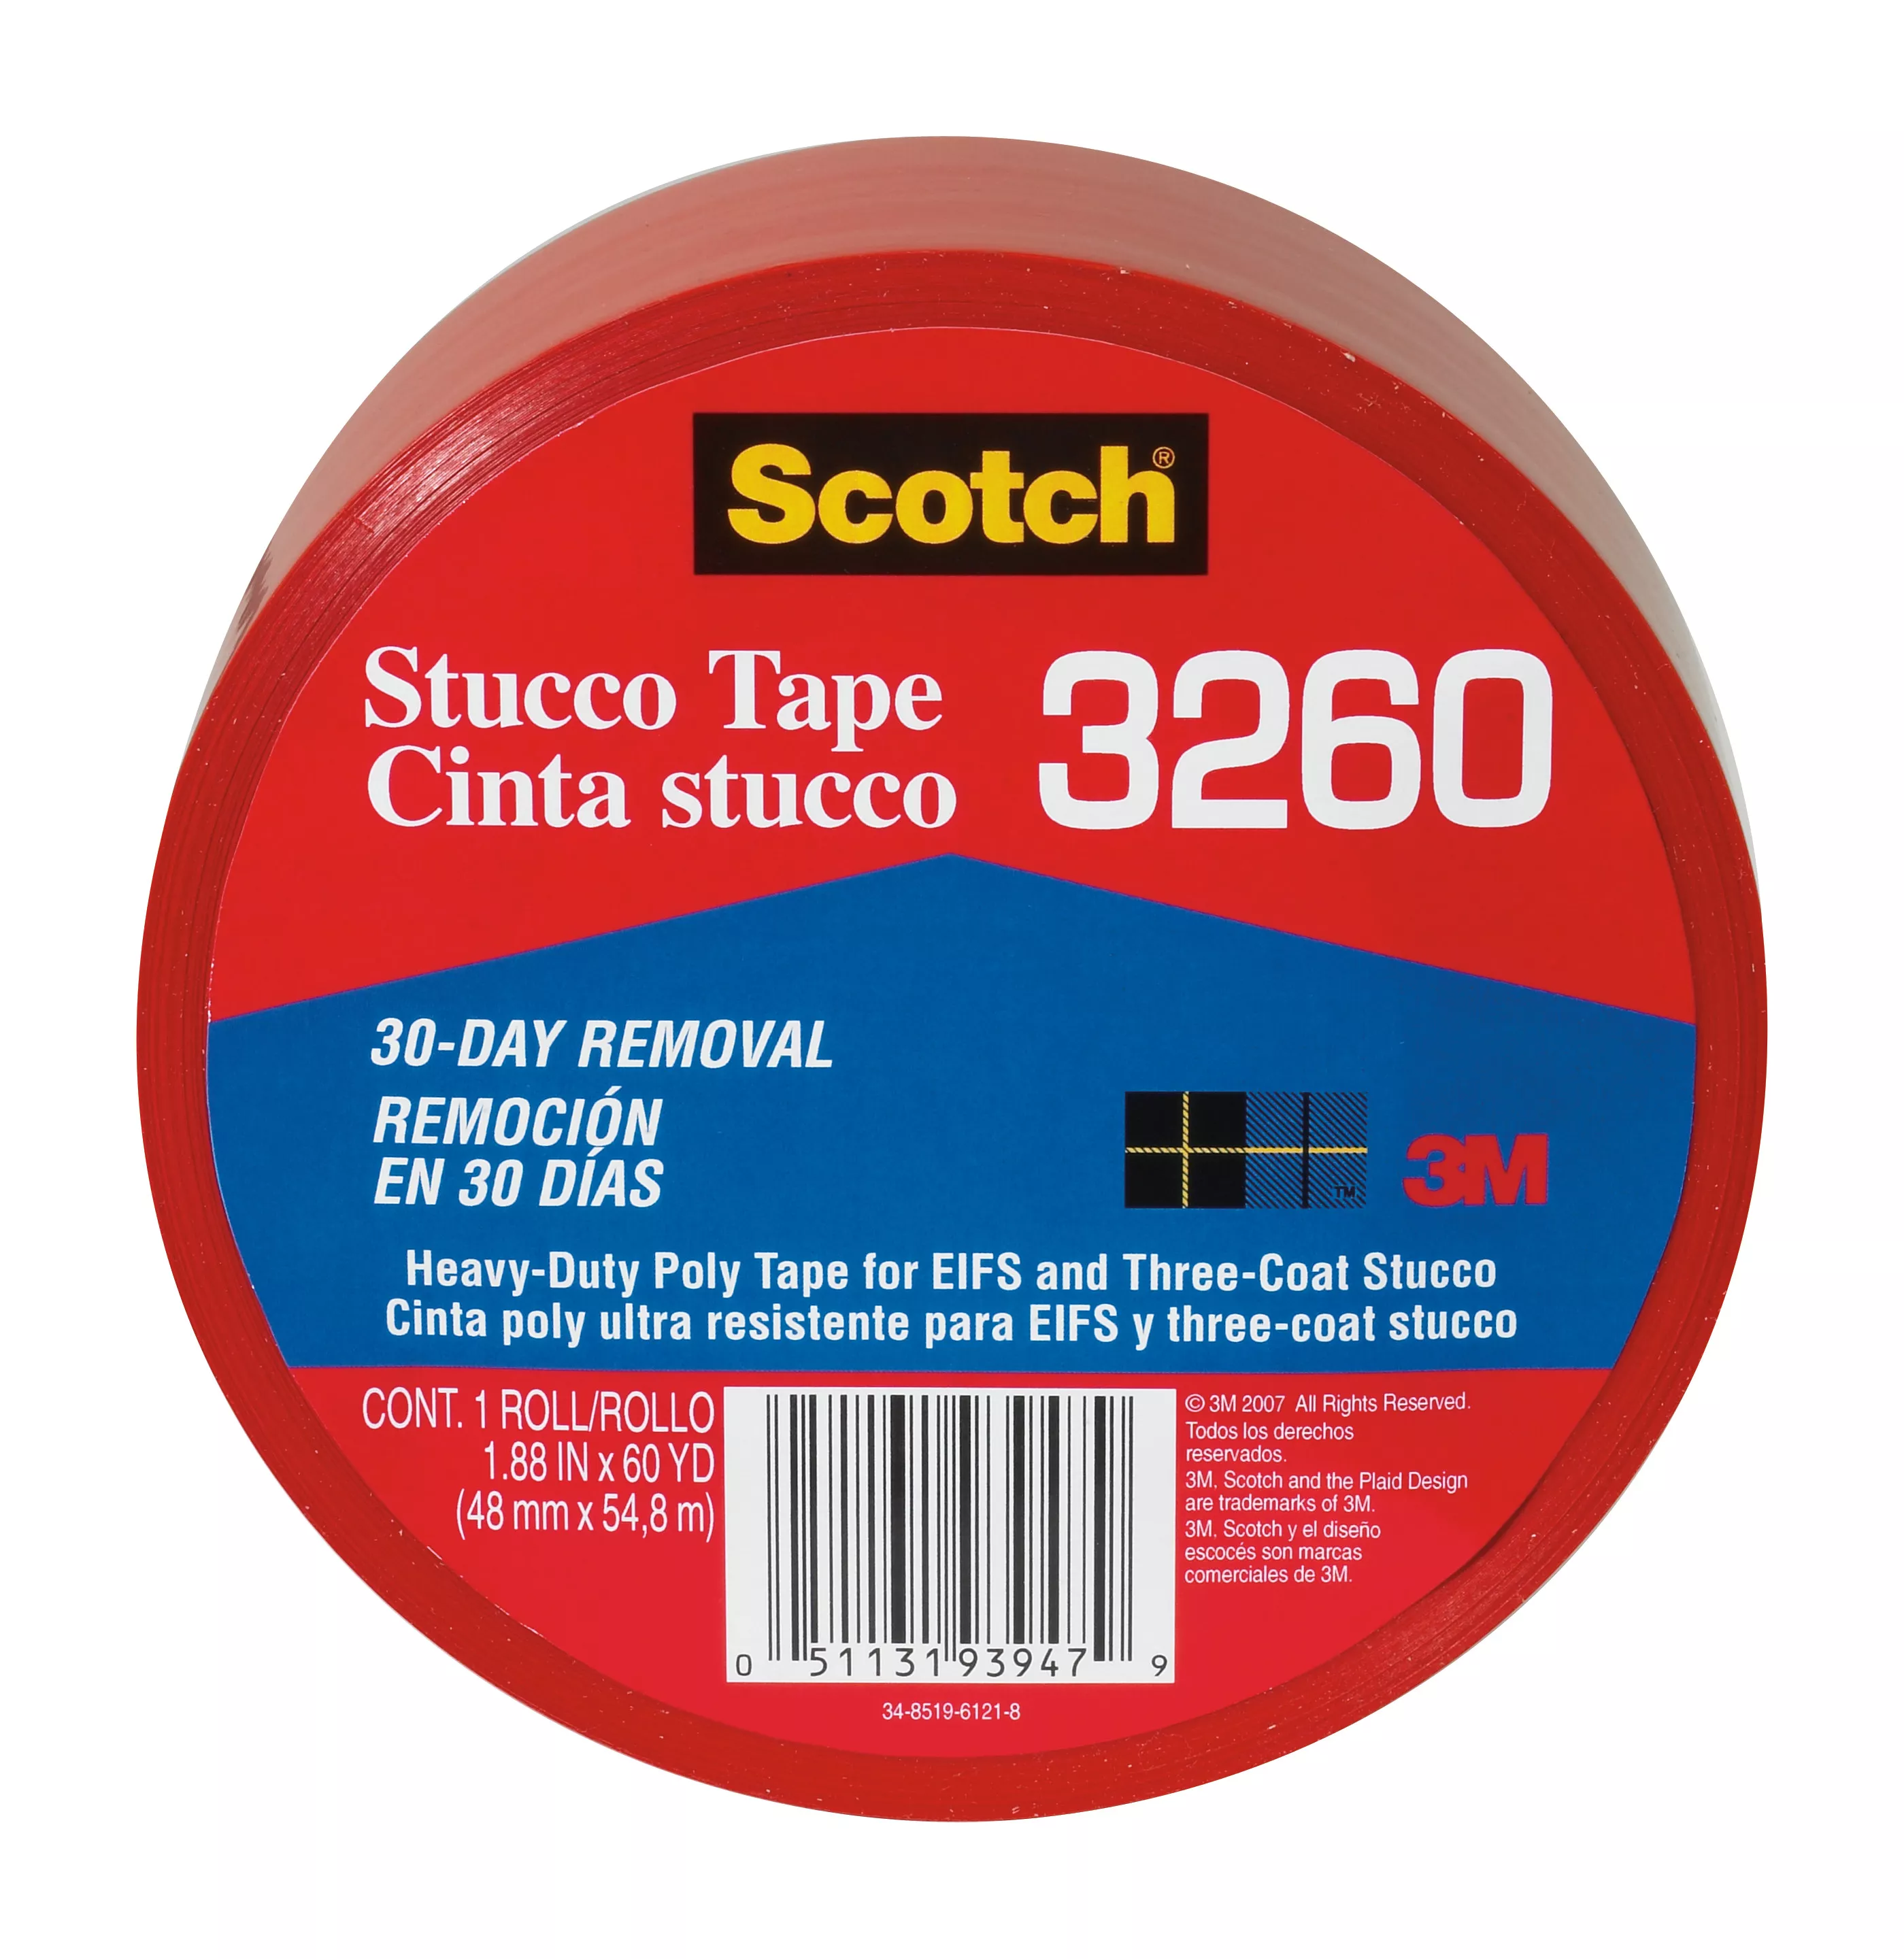 Scotch® Stucco Tape 3260-A, 1.88 in x 60 yd (48 mm x 54.8 m) Stucco Tape
12 rls/cs